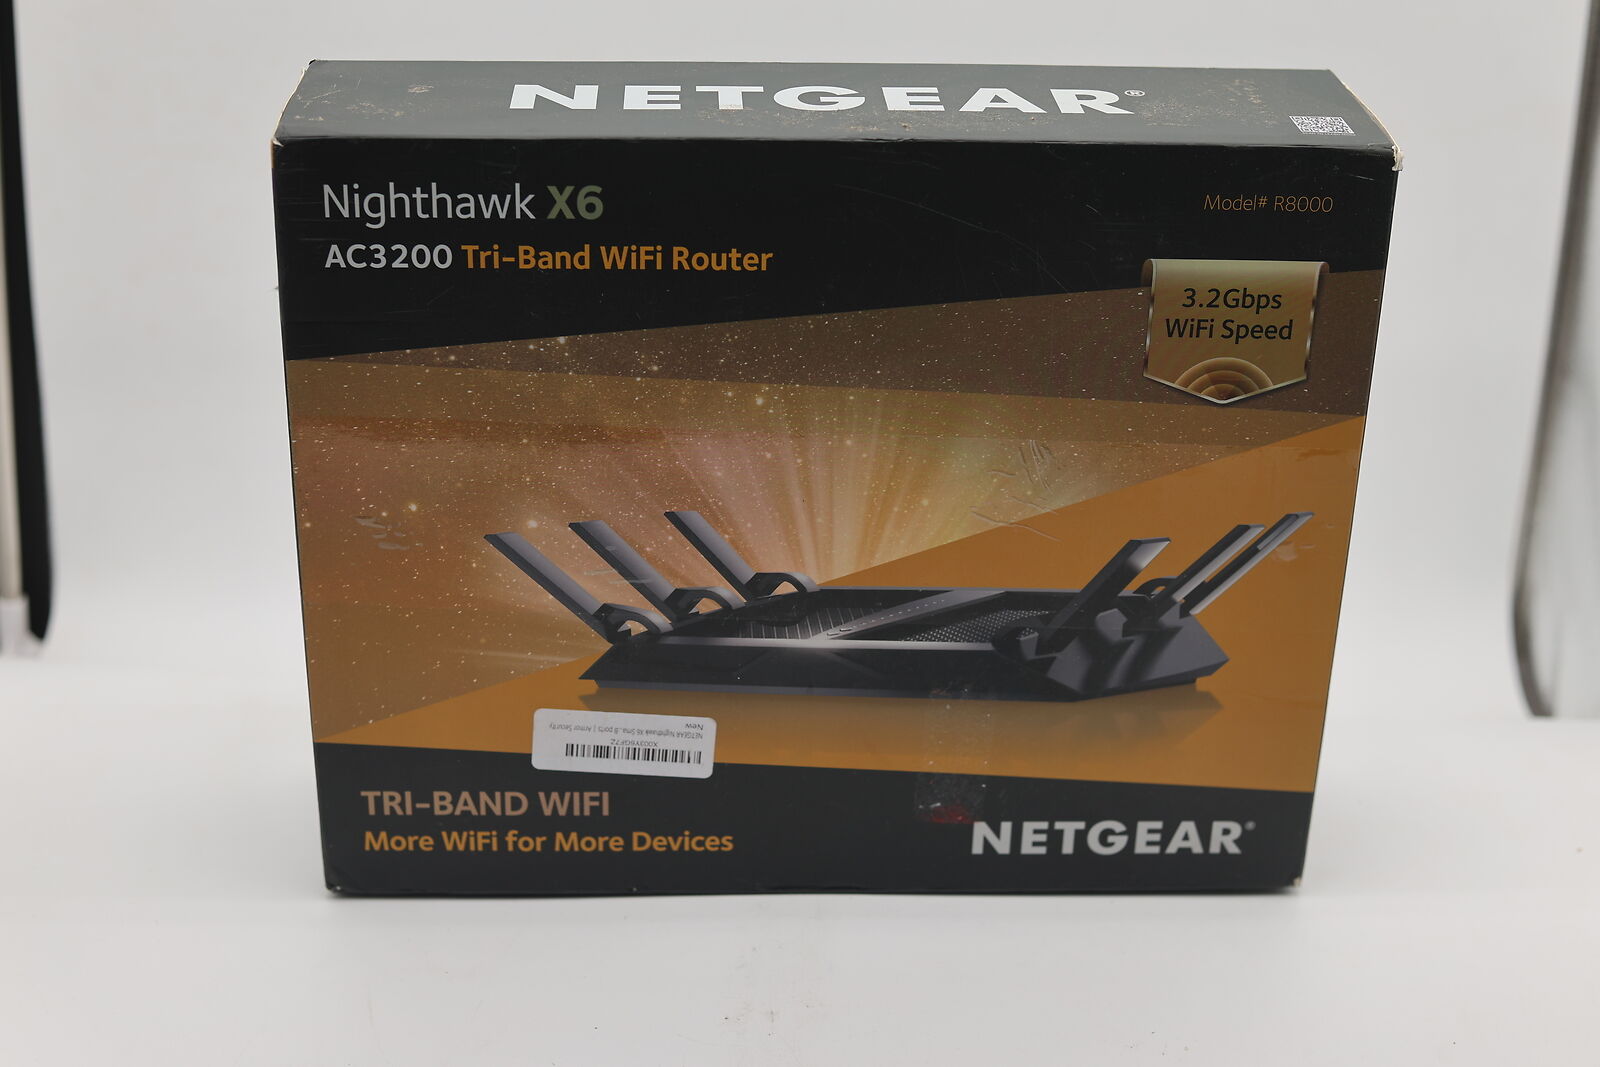 Netgear Nighthawk X6 R8000 AC3200 Tri-Band